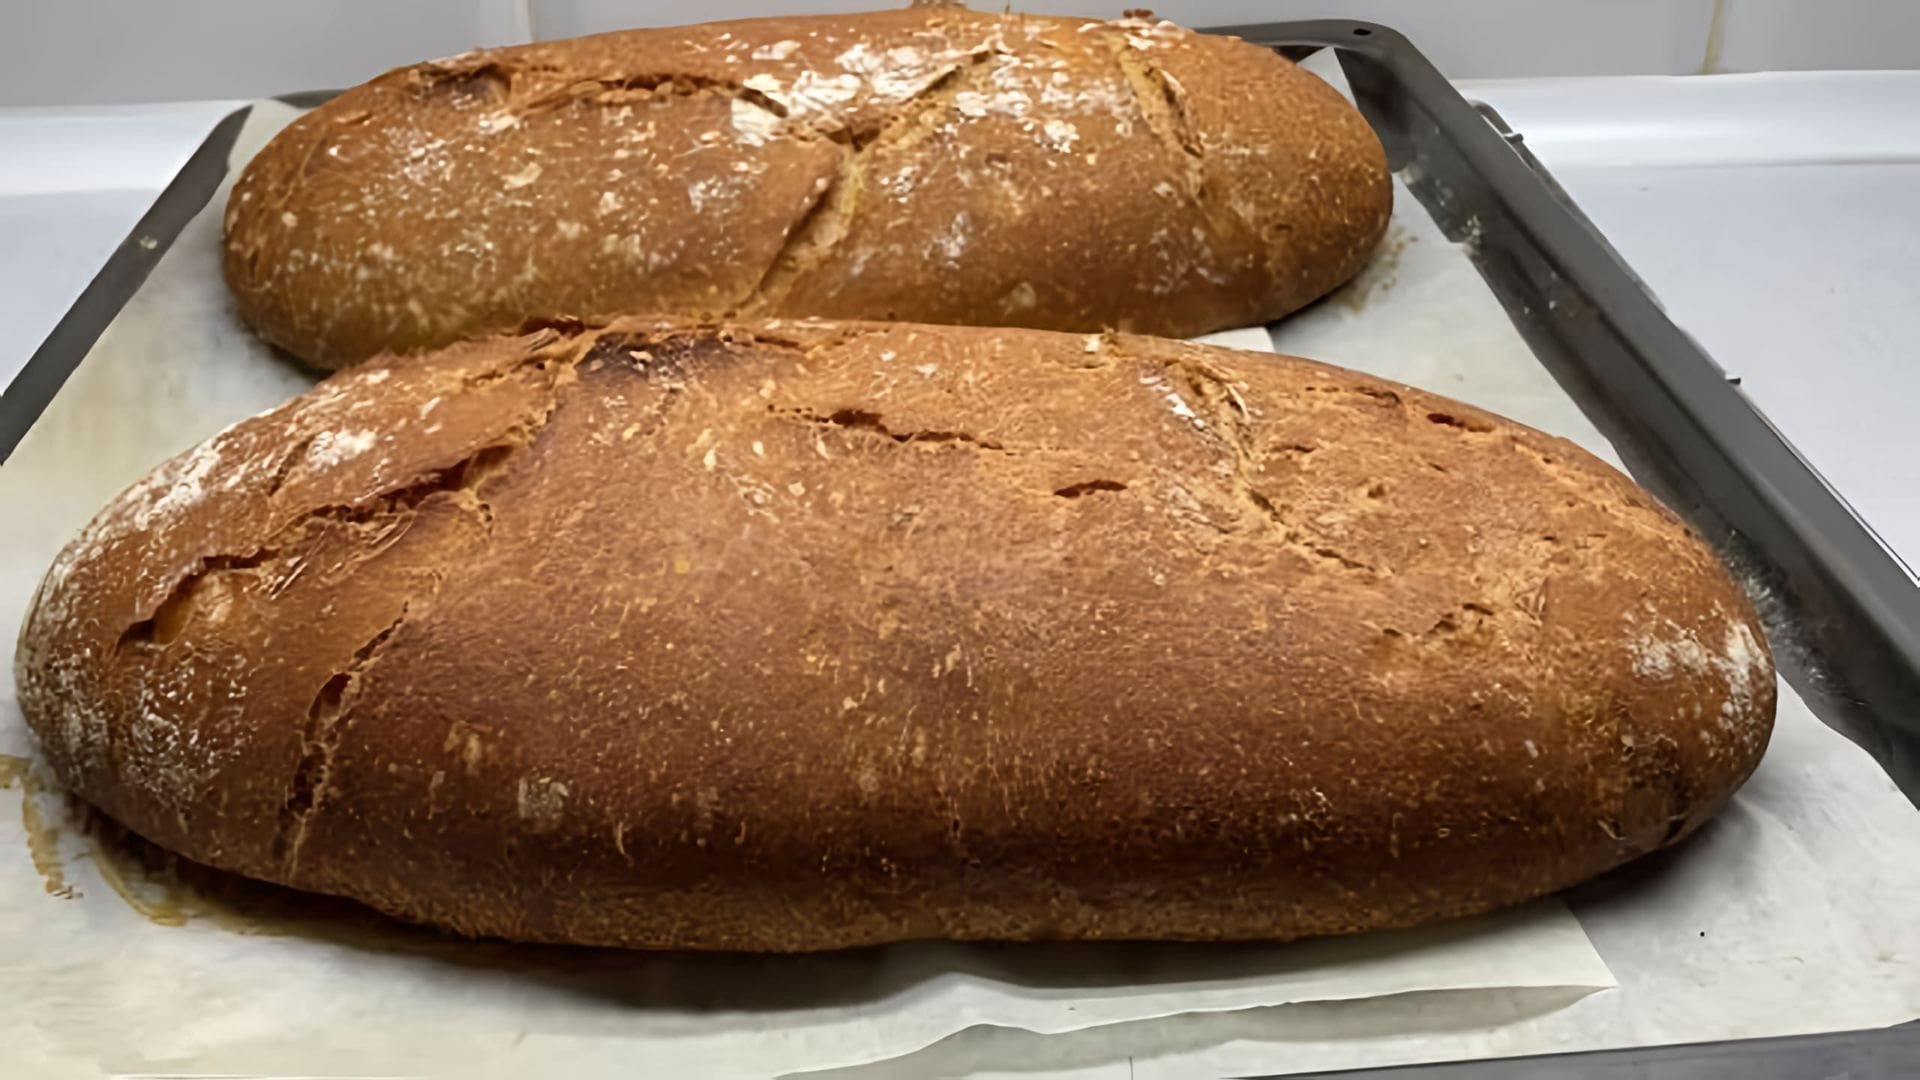 В этом видео демонстрируется рецепт приготовления пшенично-ржаного хлеба без использования форм